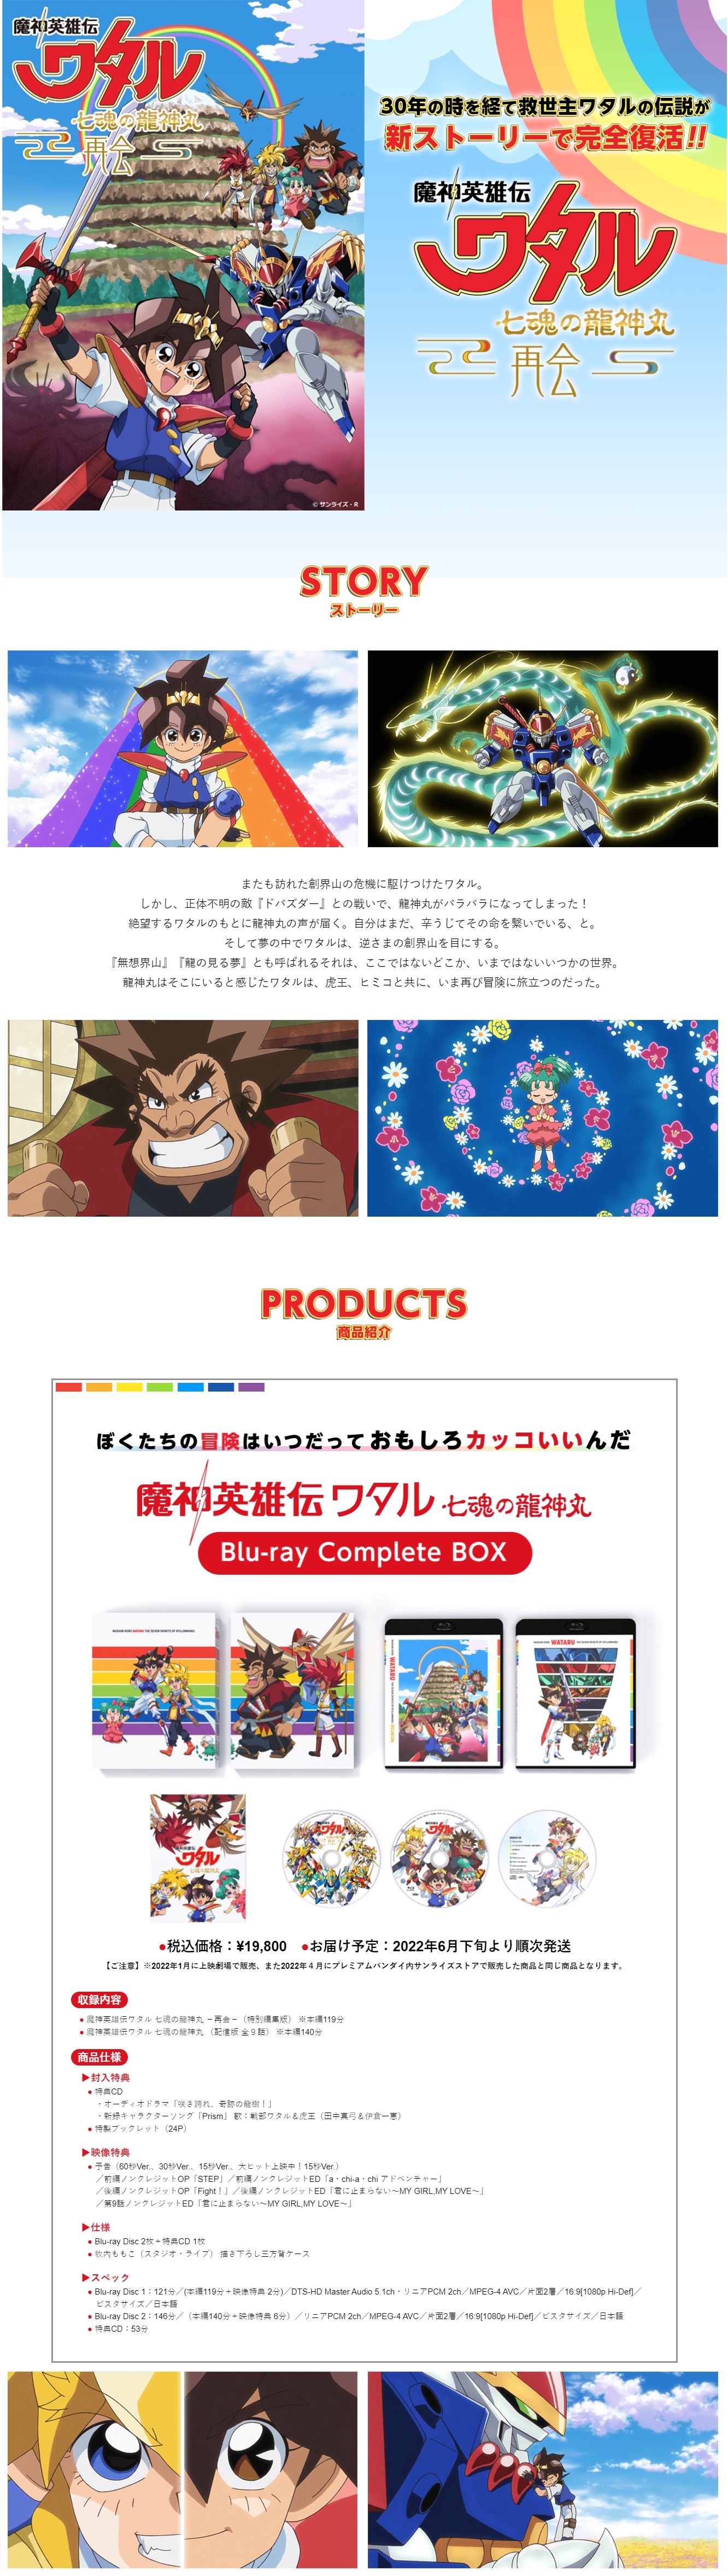 魔神英雄伝ワタル 七魂の龍神丸 Blu-ray Complete BOX 【2022年6月下旬 